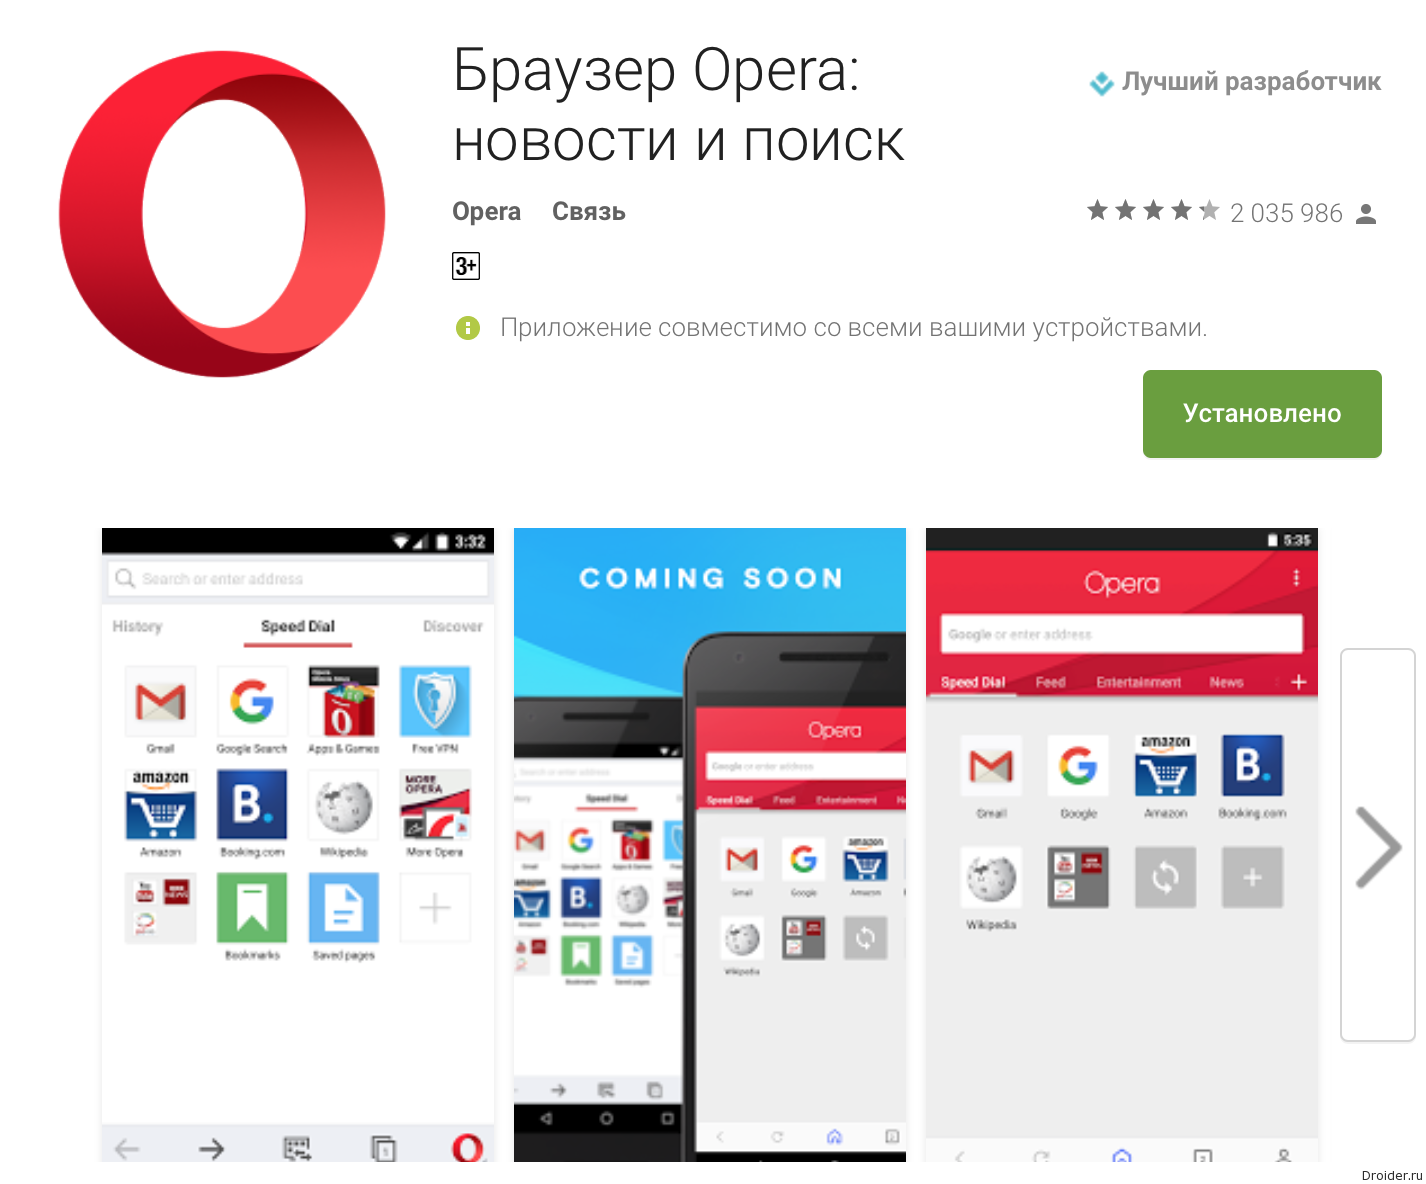 Скачать опера для андроид бесплатно русская версия